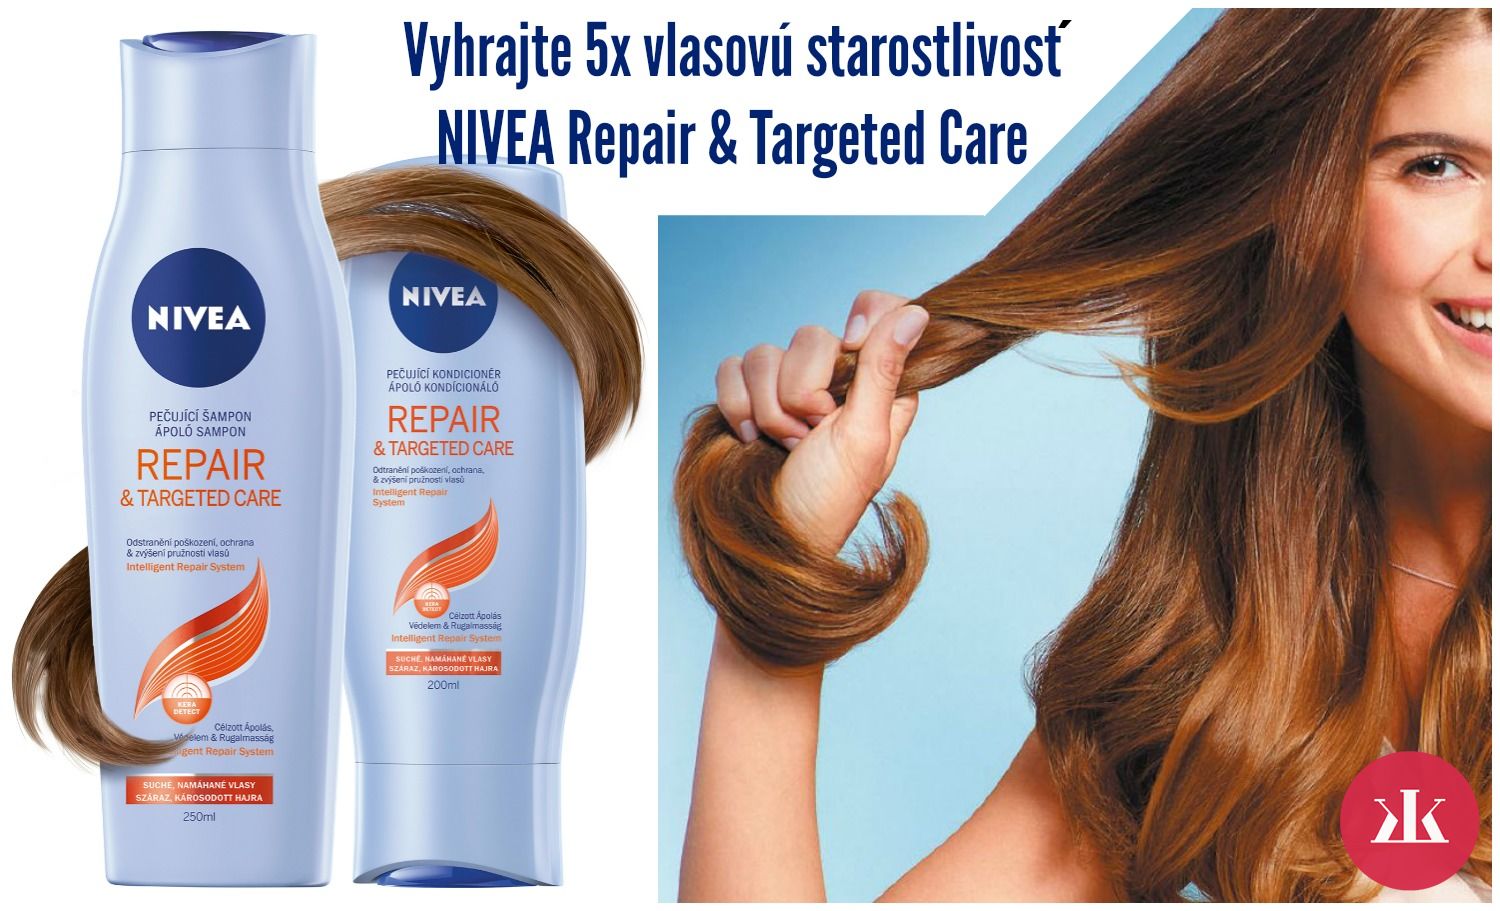  Vyhrajte 5x vlasovú starostlivosť  NIVEA Repair & Targeted Care